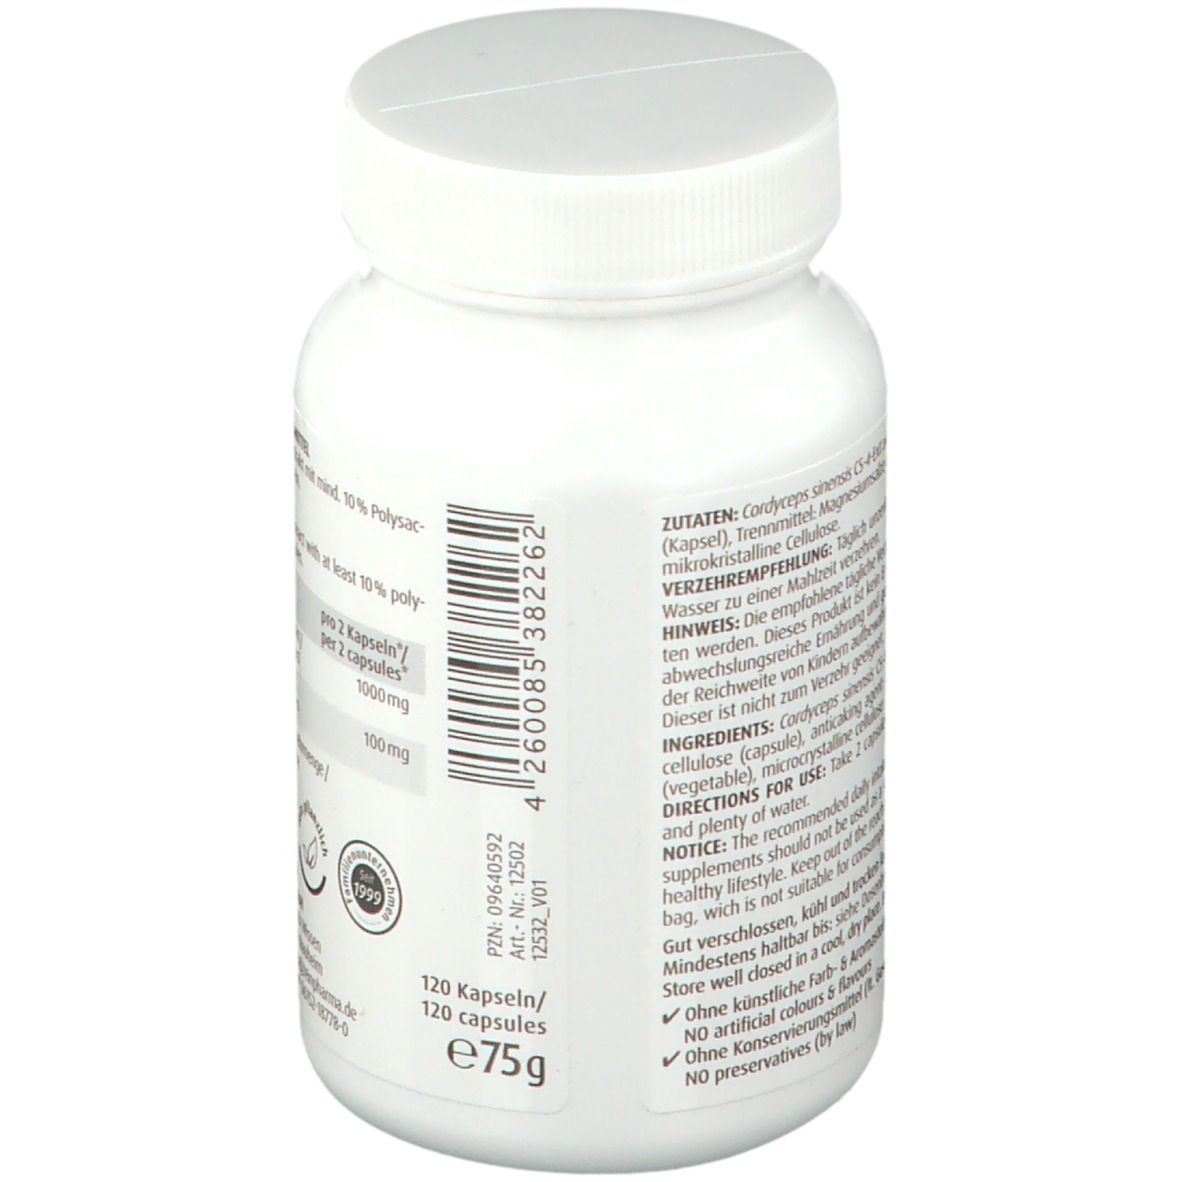 ZeinPharma® Cordyceps CS 4 Extrakt Kapseln 500 mg